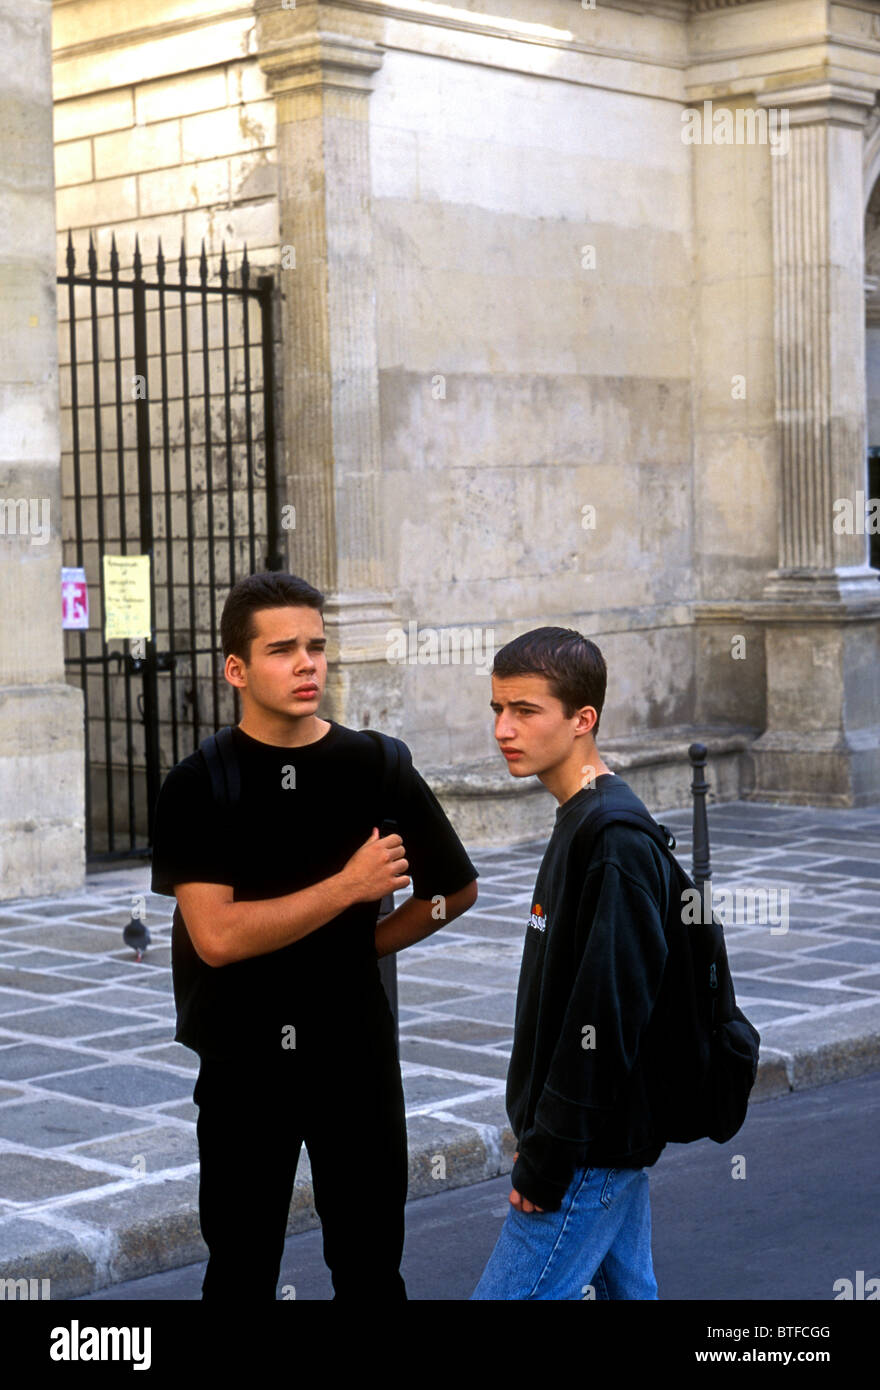 Französische Schüler Schüler erhalten zusammen an der Aussparung am Lycee Charlemagne im Stadtteil Marais in Paris Frankreich Stockfoto